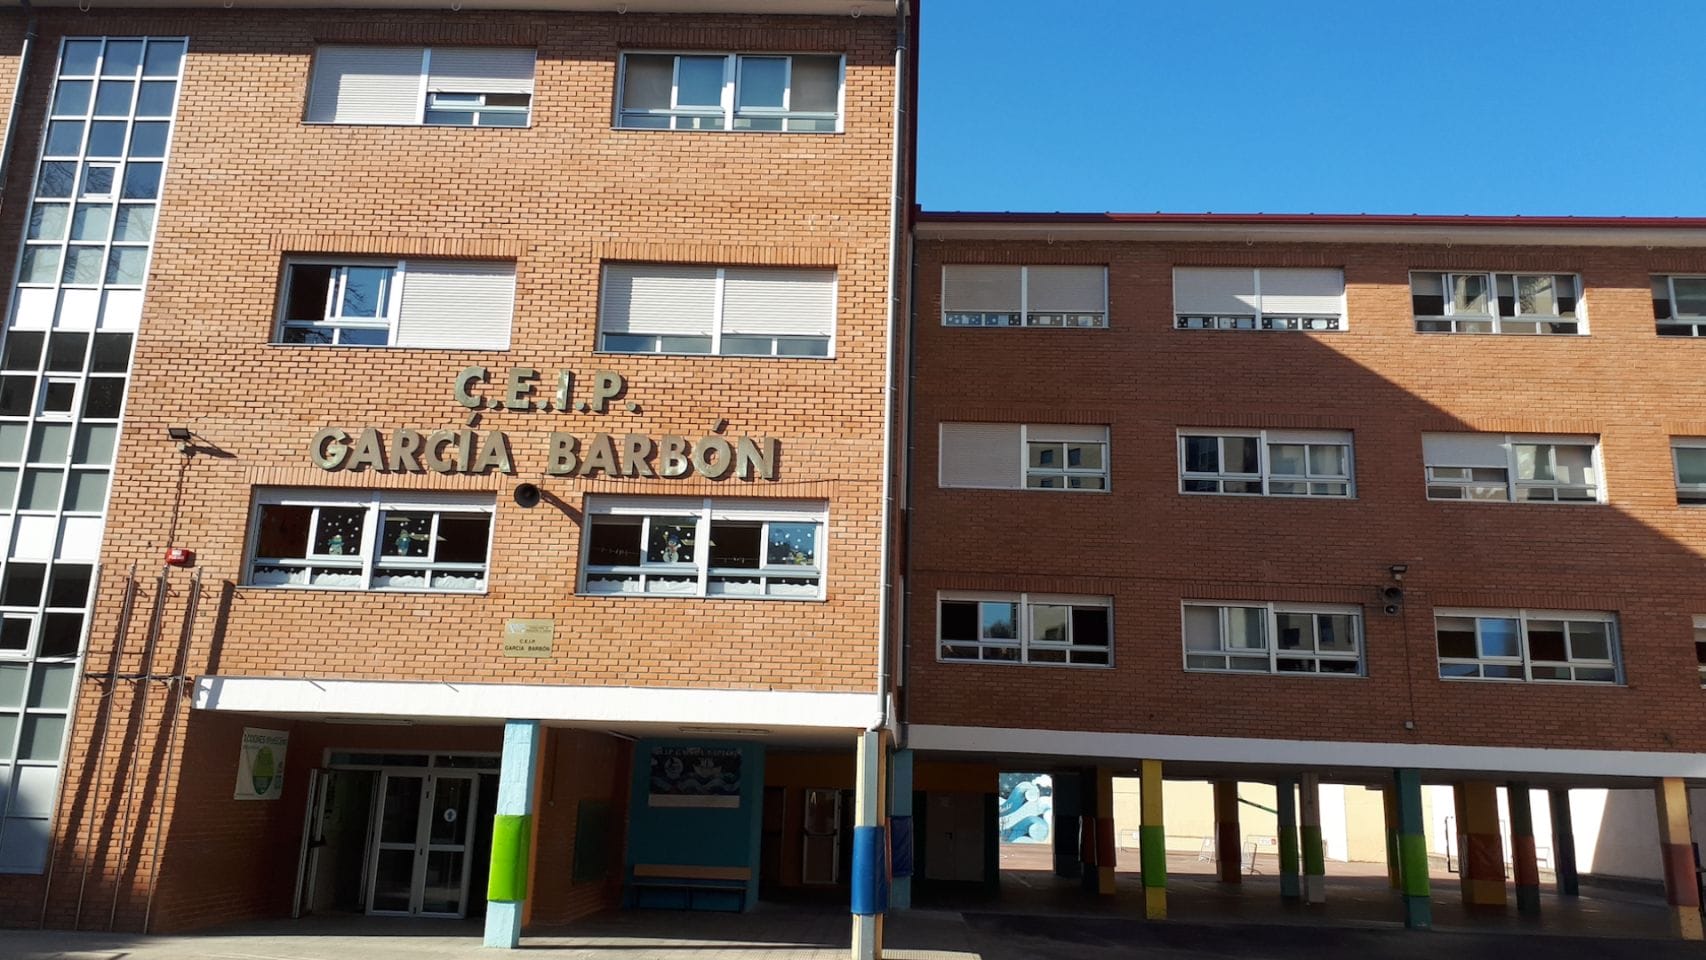 Fachada del CEIP García Barbón, en Vigo.